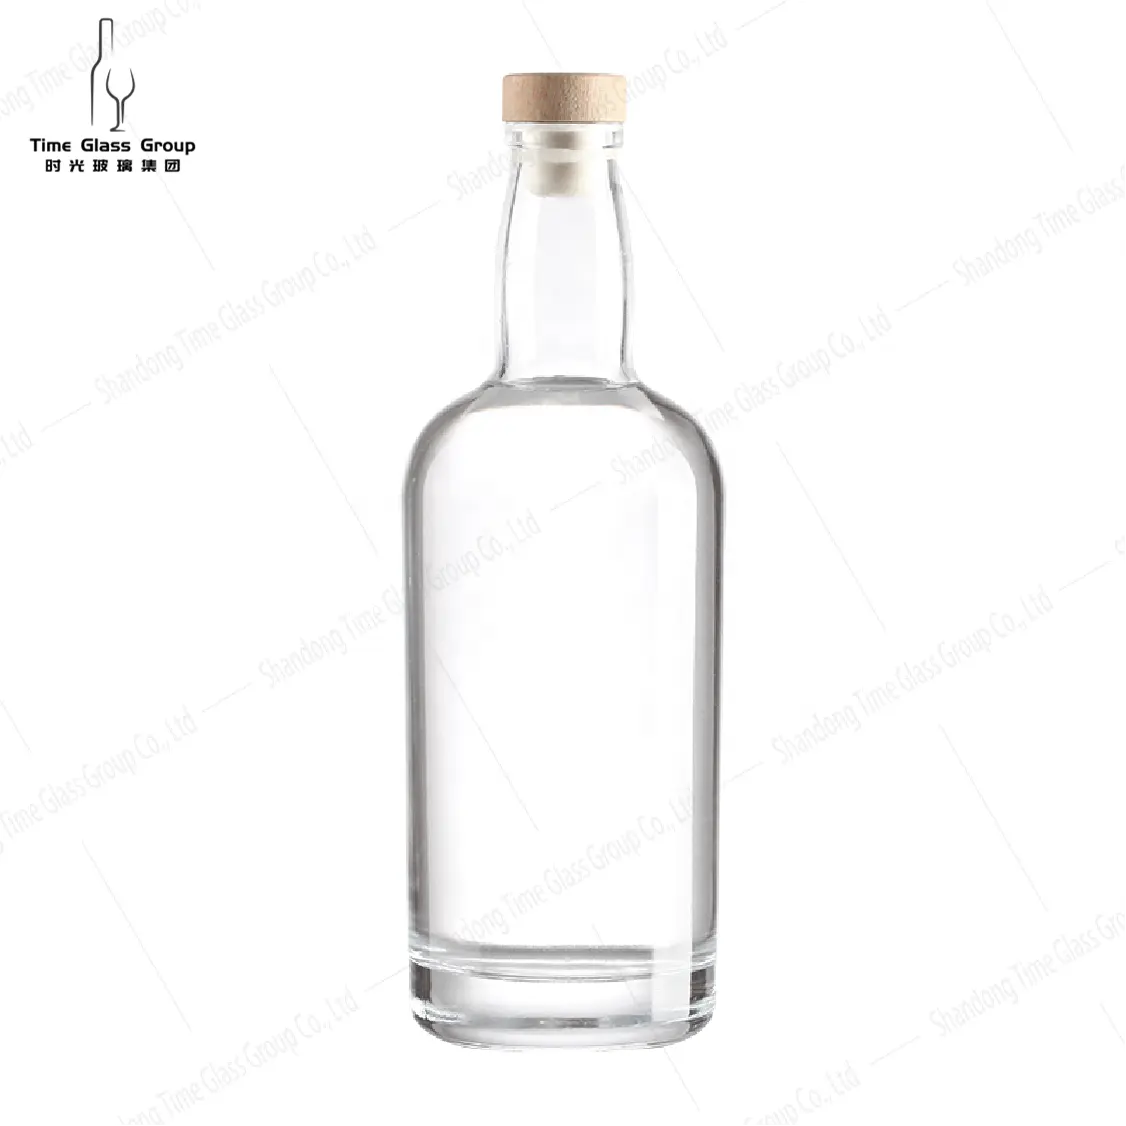 Whisky glasflasche 750ml Glasflasche Schnaps verpackung